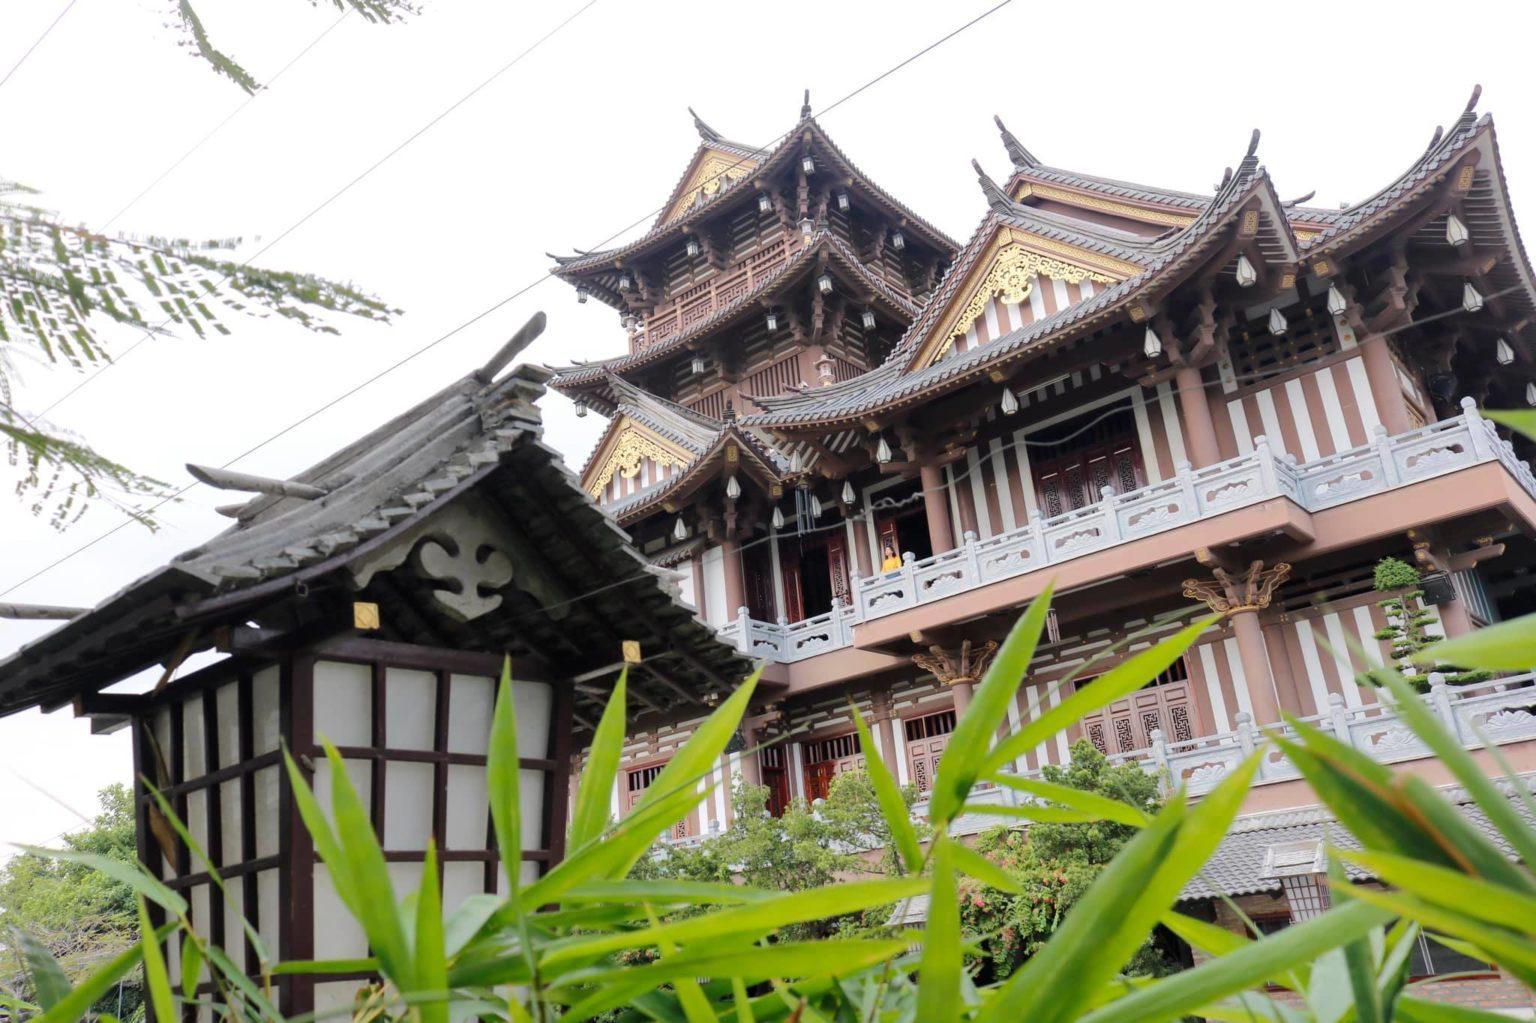 chùa Tu viện Khánh An Sài Gòn